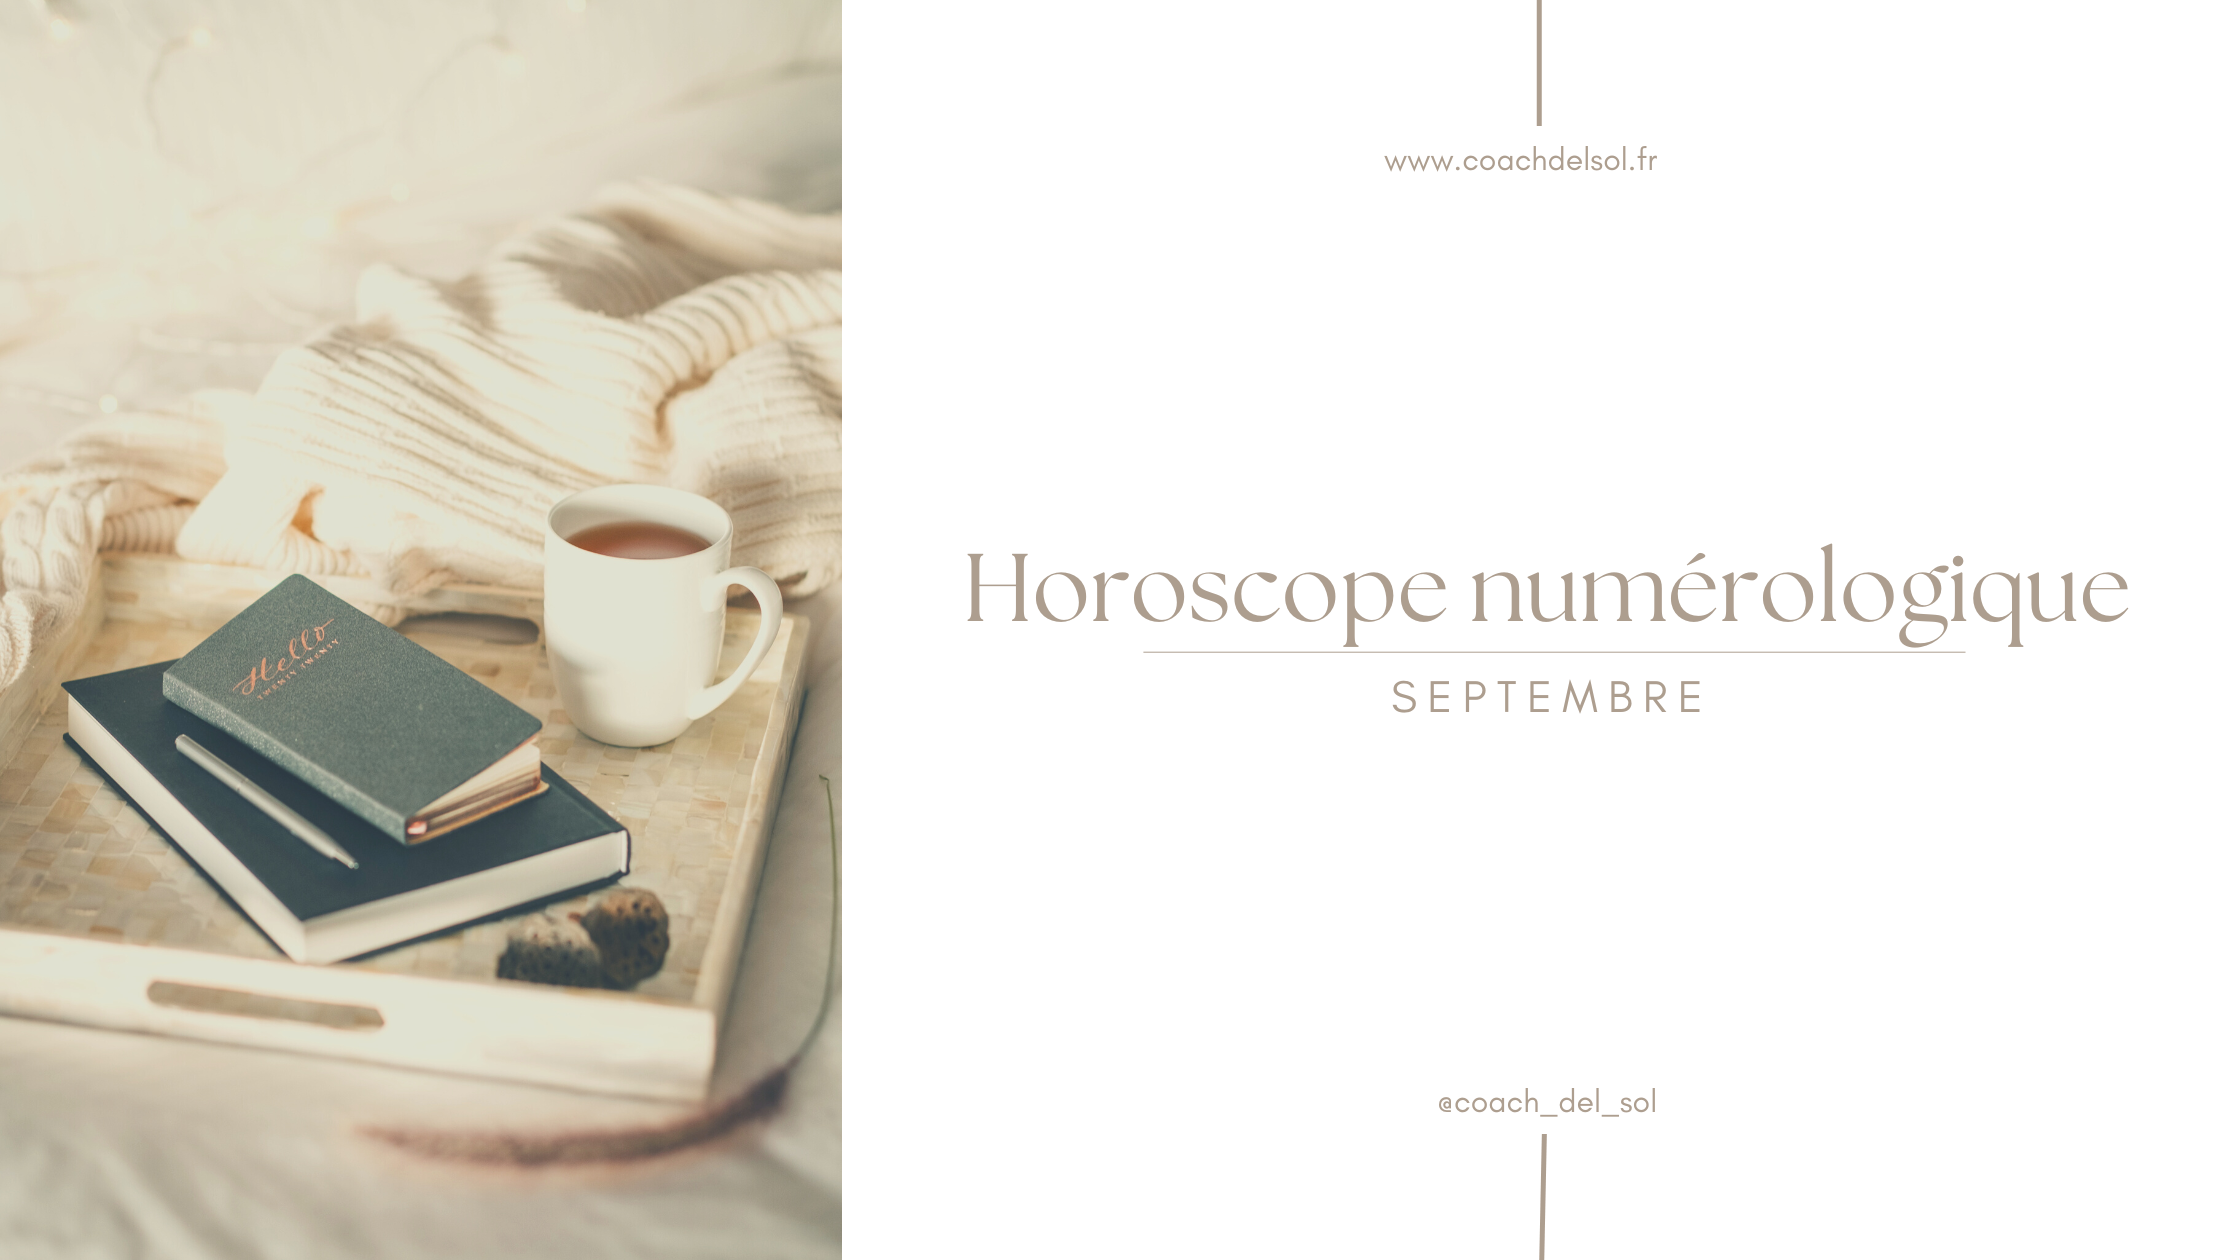 Horoscope-numerologique-septembre